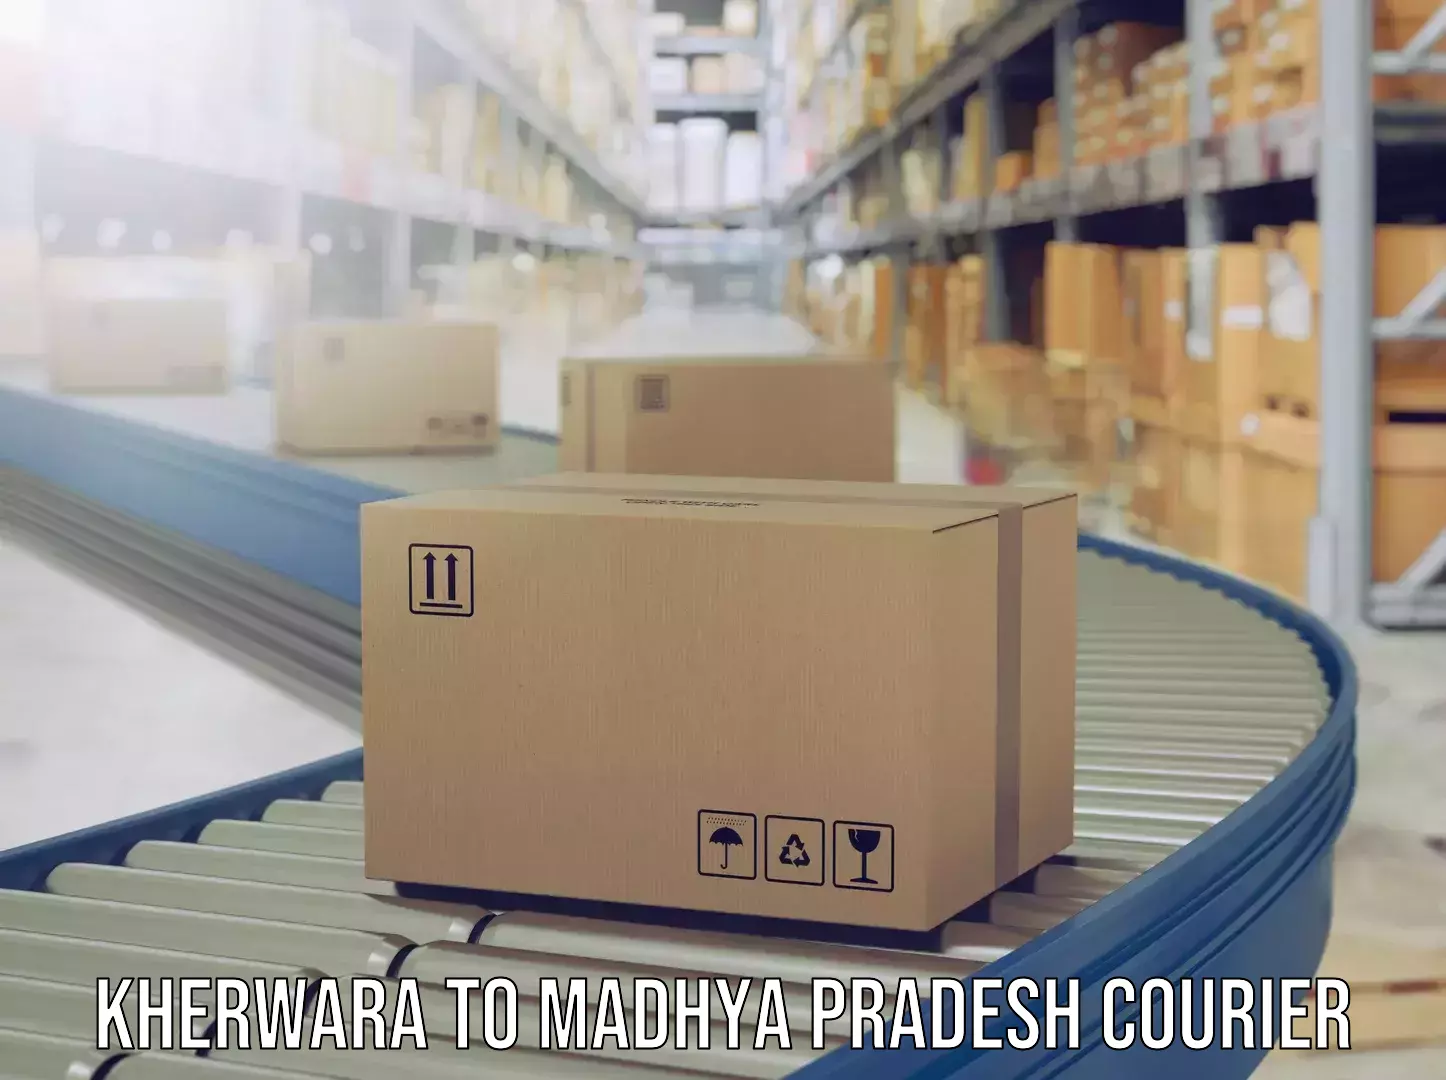 Luggage shipment specialists Kherwara to Amla